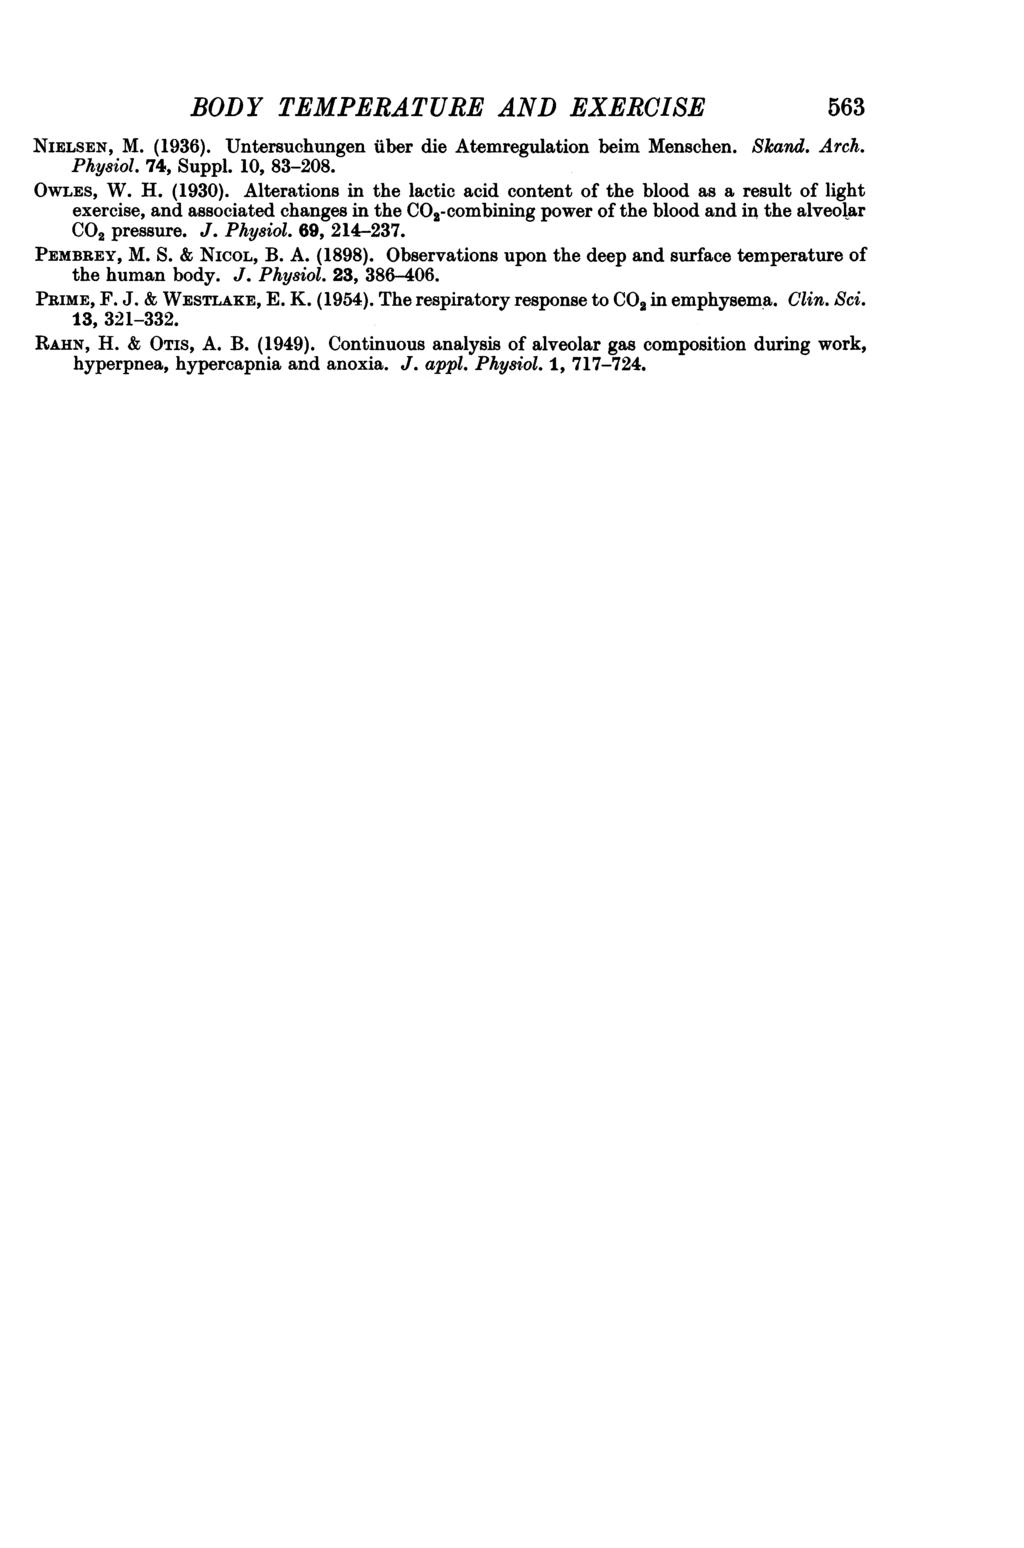 BODY TEMPERATURE AND EXERCISE 563 NIELSEN, M. (1936). Untersuchungen uber die Atemregulation beim Menschen. Phy8iol. 74, Suppl. 1, 83-28. Skand. Arch. OWLES, W. H. (193).